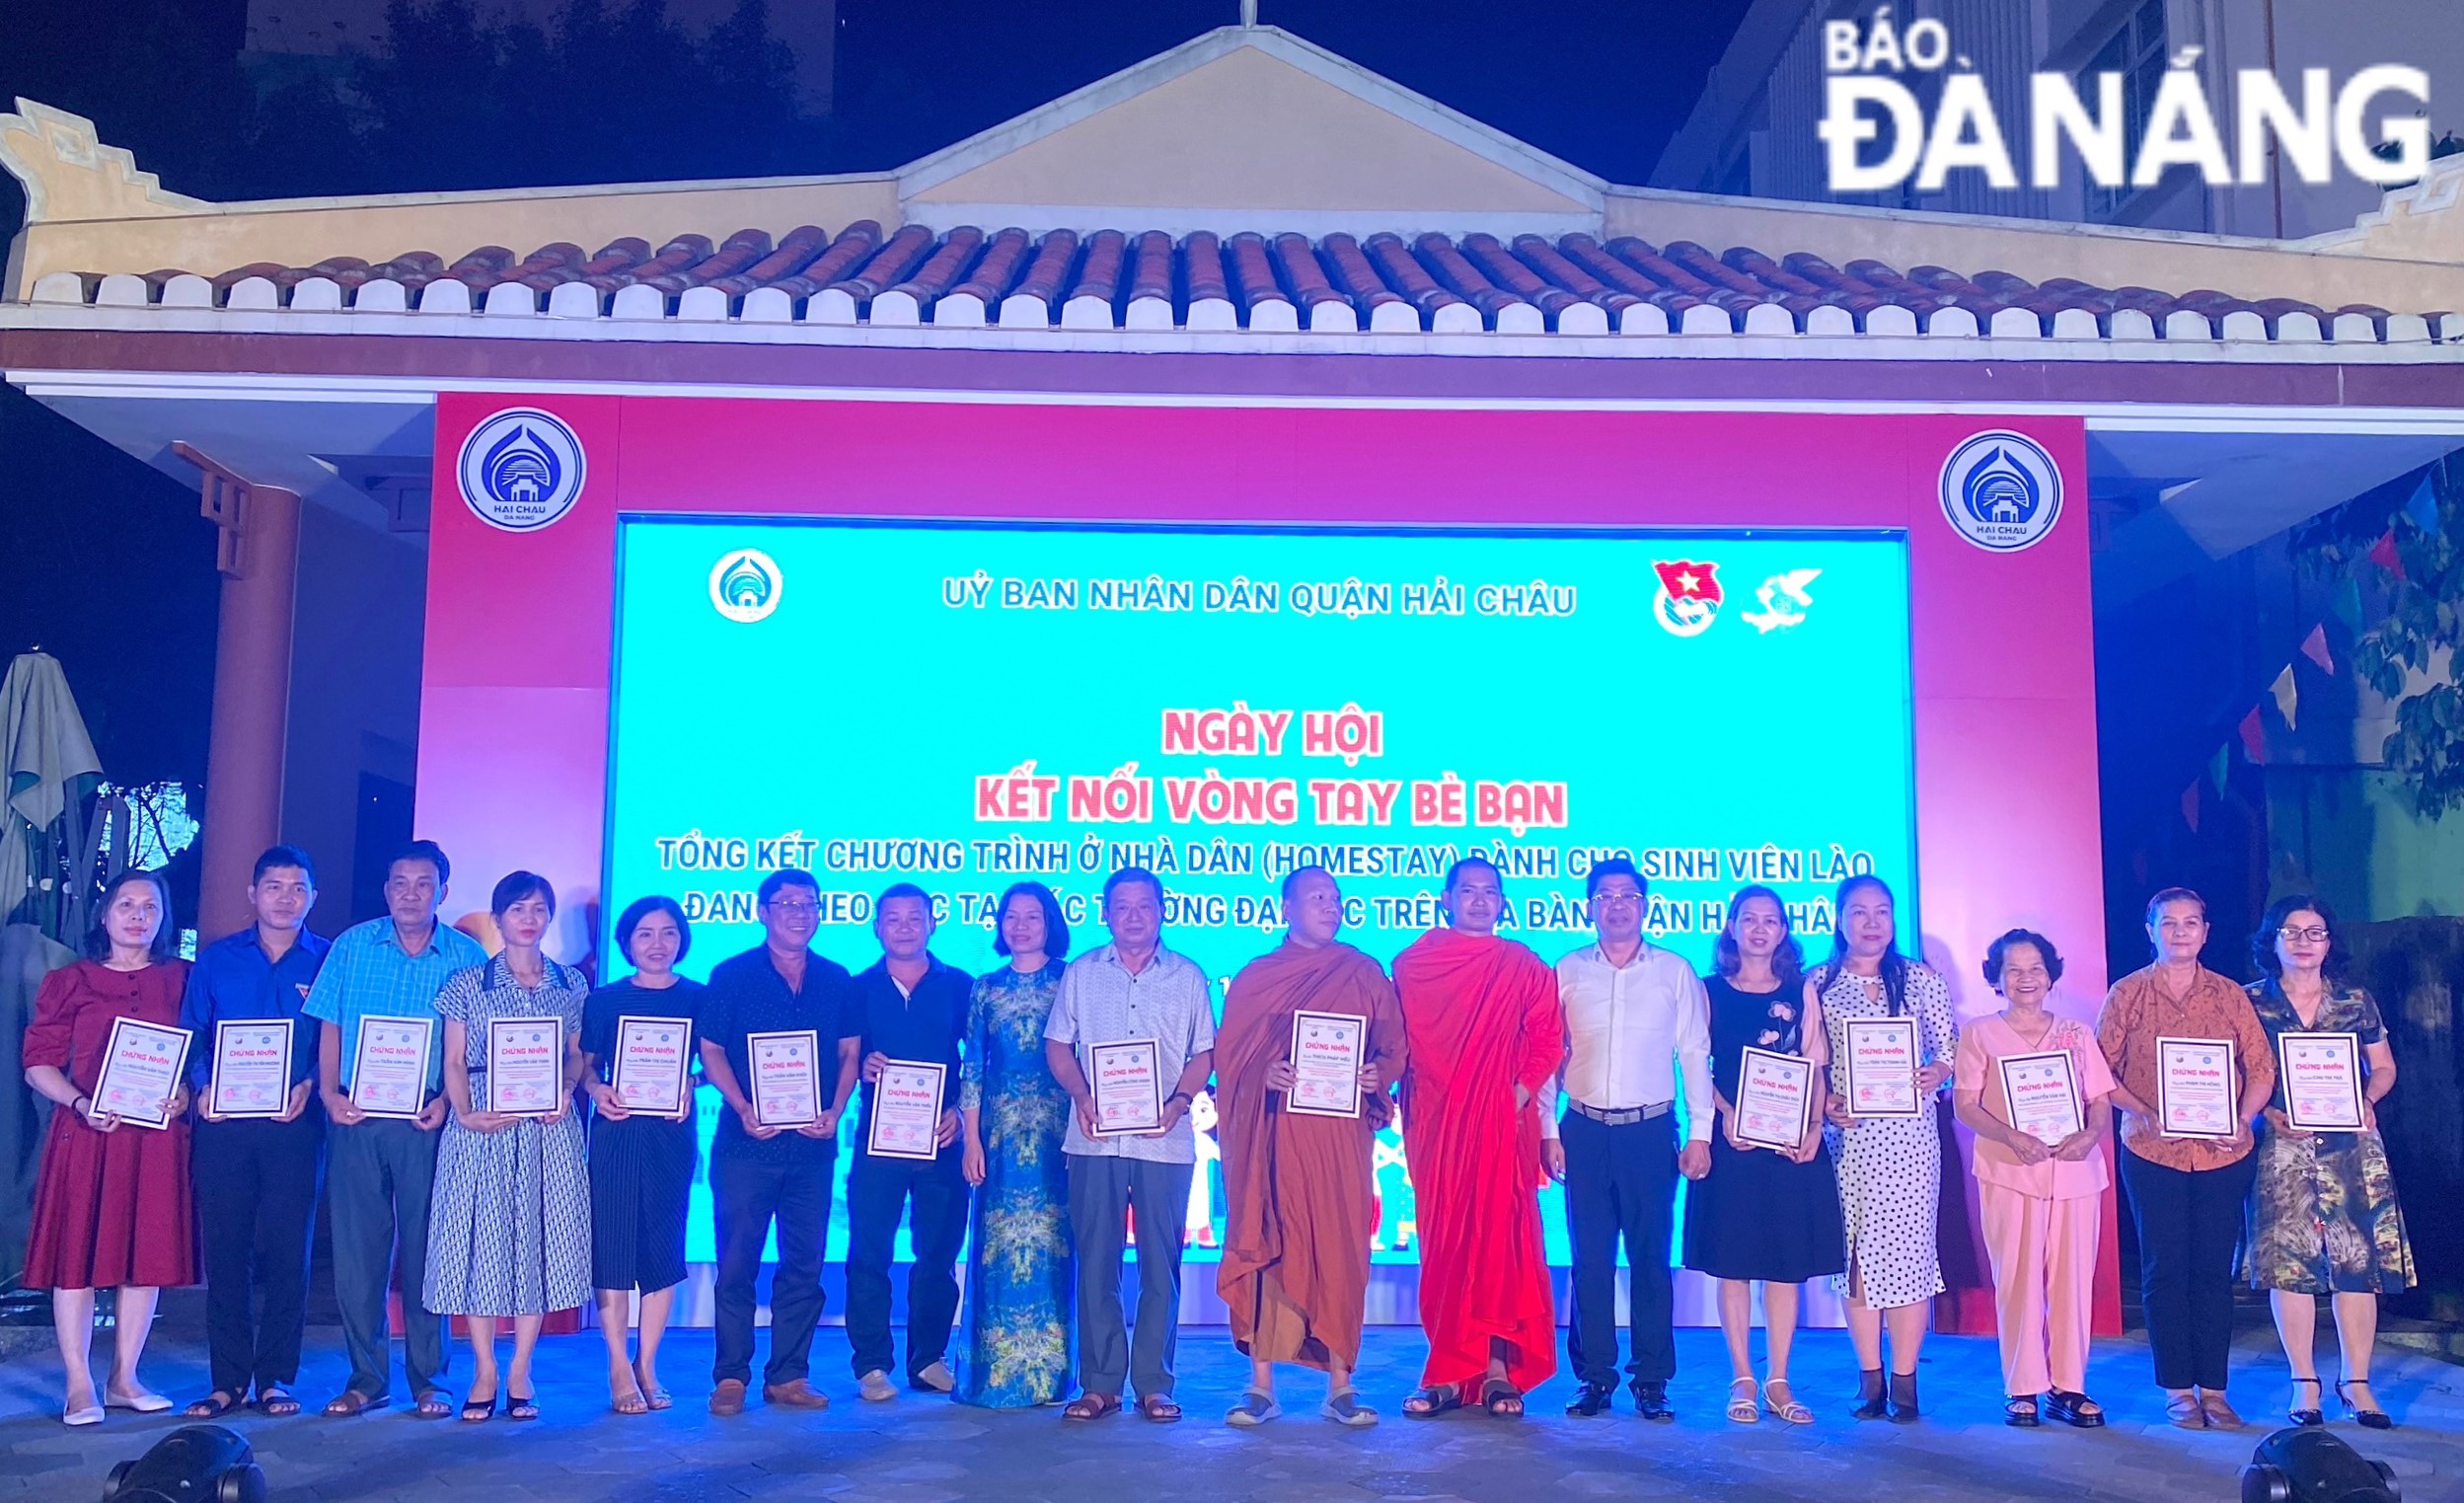 Liên hiệp các tổ chức hữu nghị thành phố trao giấy chứng nhận cho các gia đình và chùa Tam Bảo tham gia chương trình. Ảnh: K.N